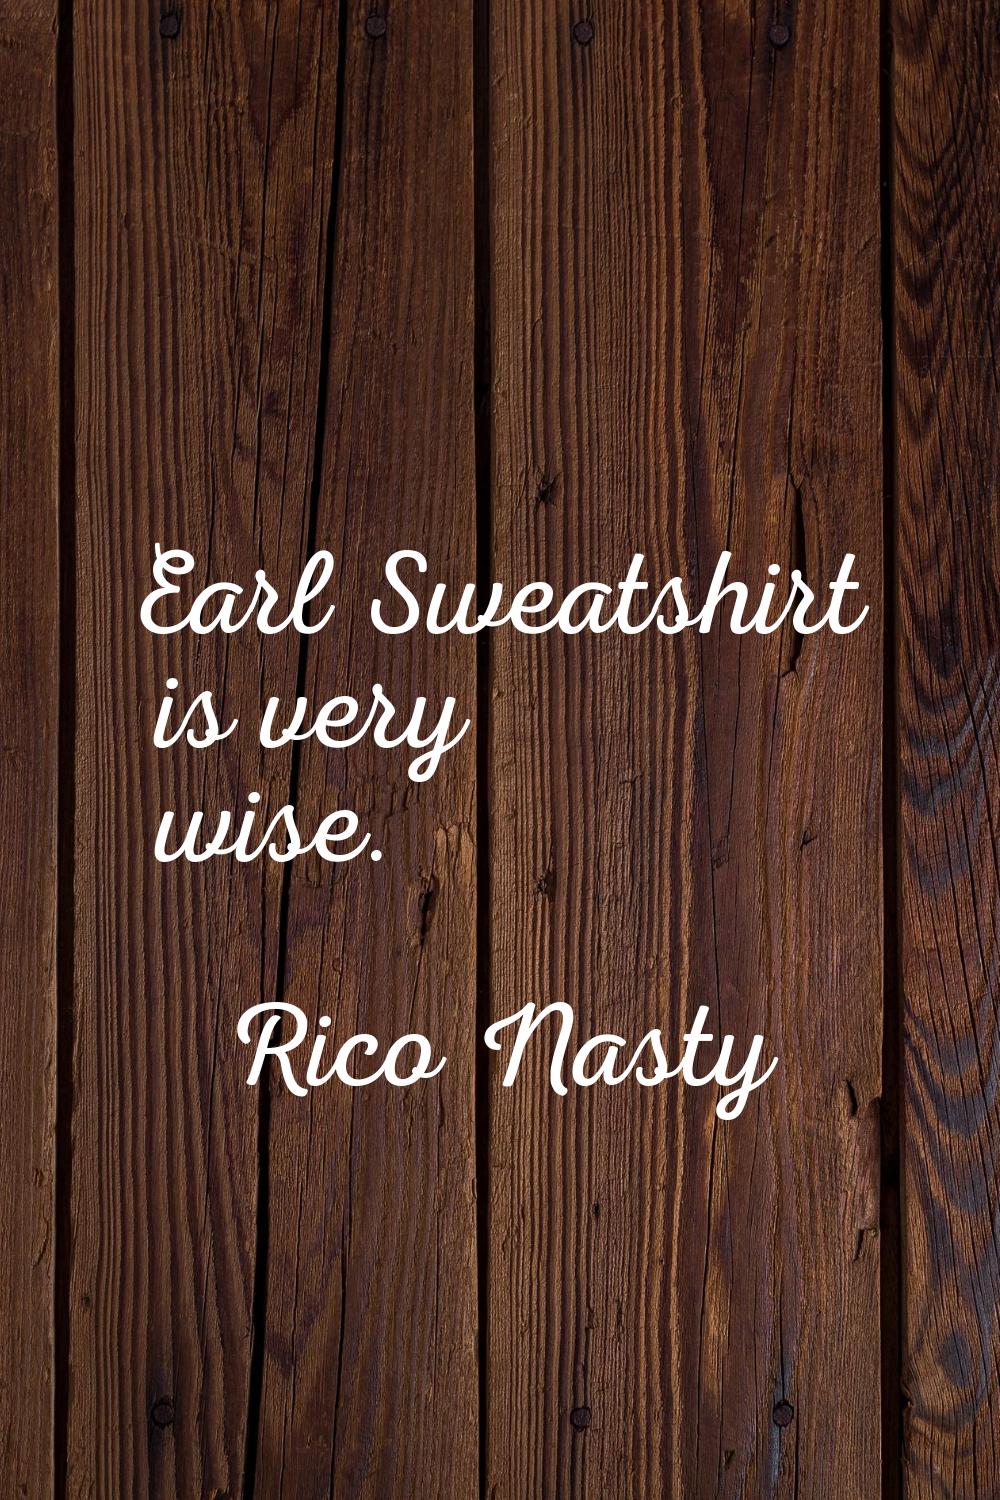 Earl Sweatshirt is very wise.